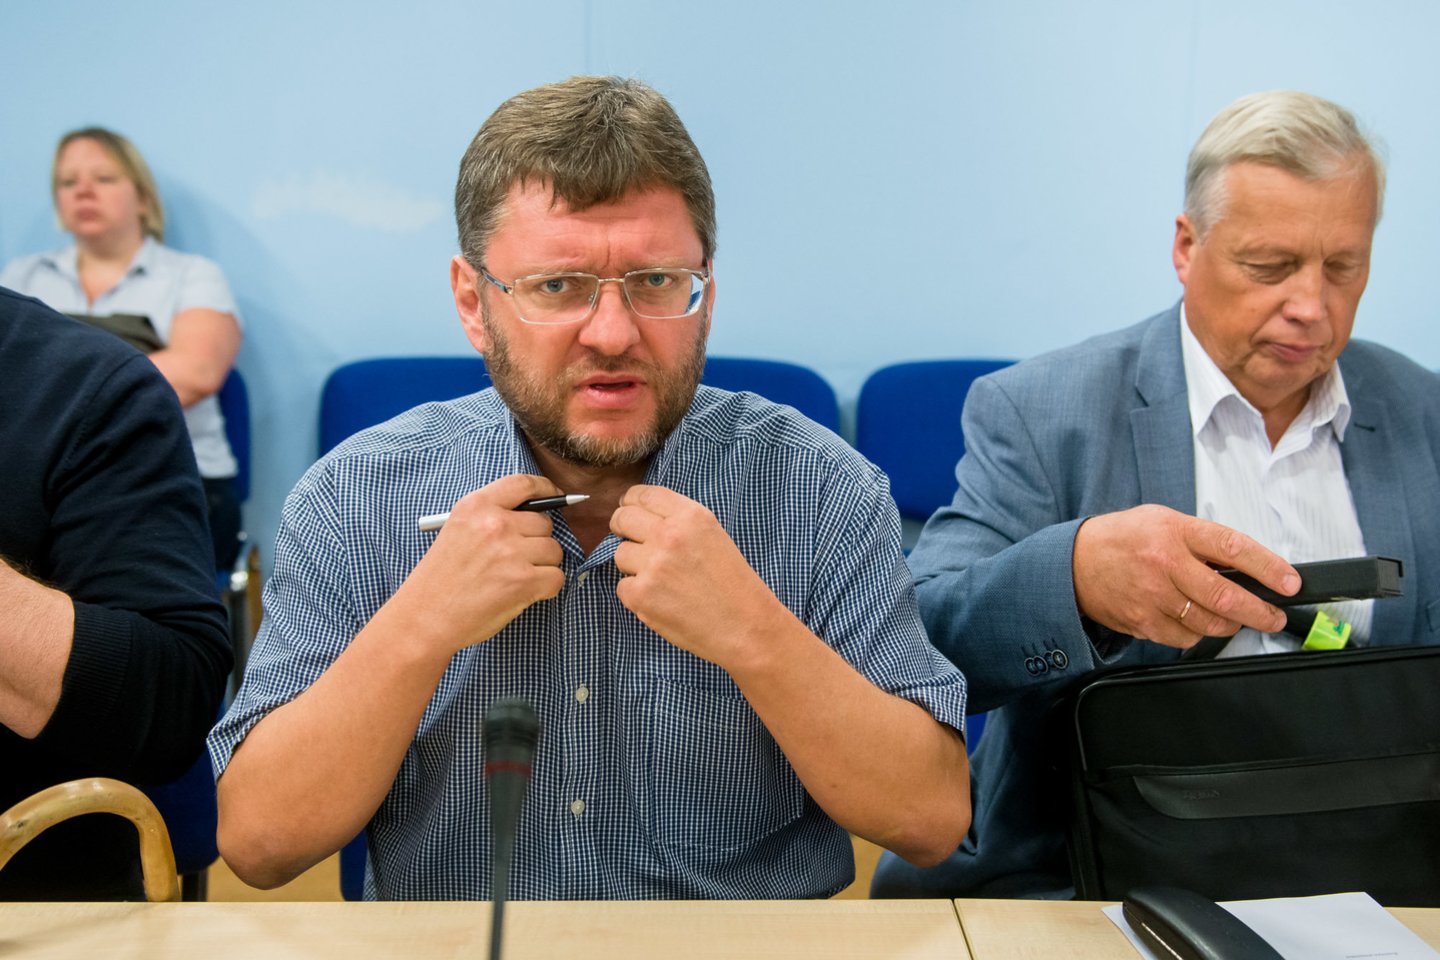 Seimo Žmogaus teisių komiteto pirmininkas V.Simulikas buvo užsipultas ir netgi apkaltintas spaudimu teisėsaugai.<br> J.Stacevičiaus nuotr.